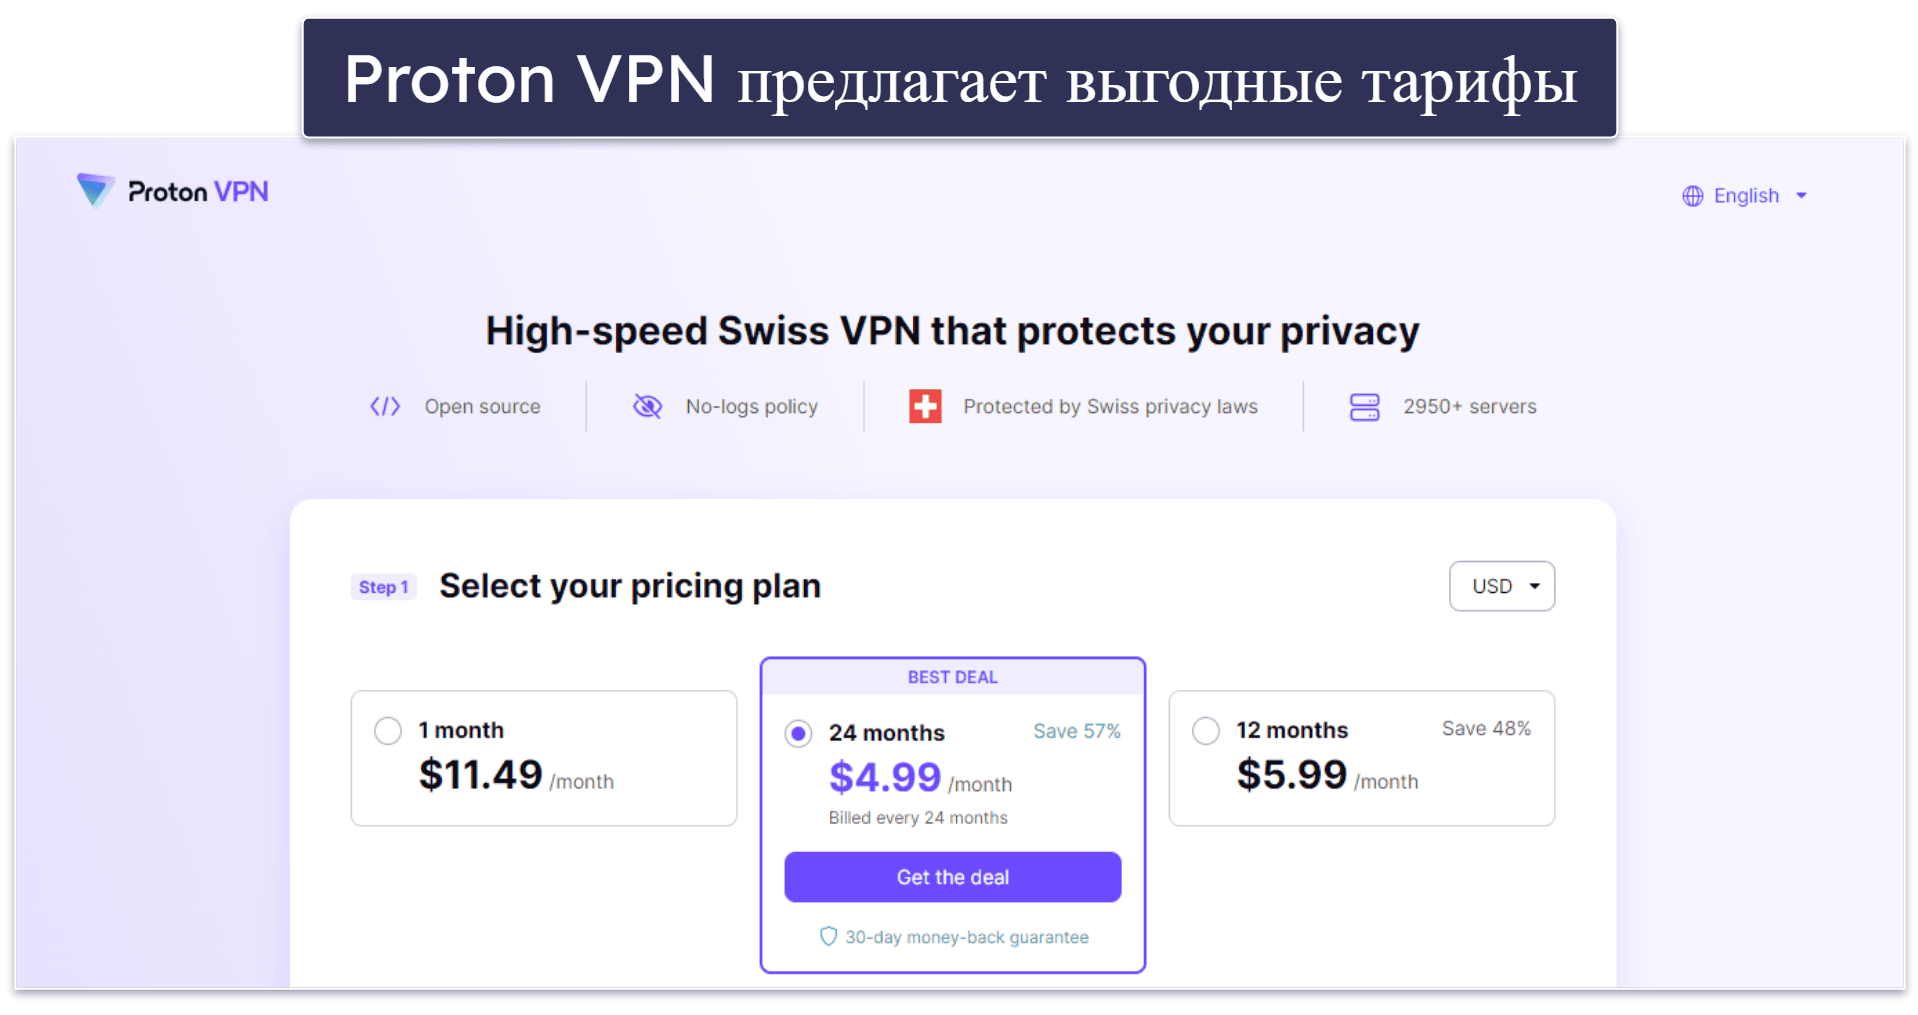 7. Proton VPN — первоклассные функции безопасности и конфиденциальности